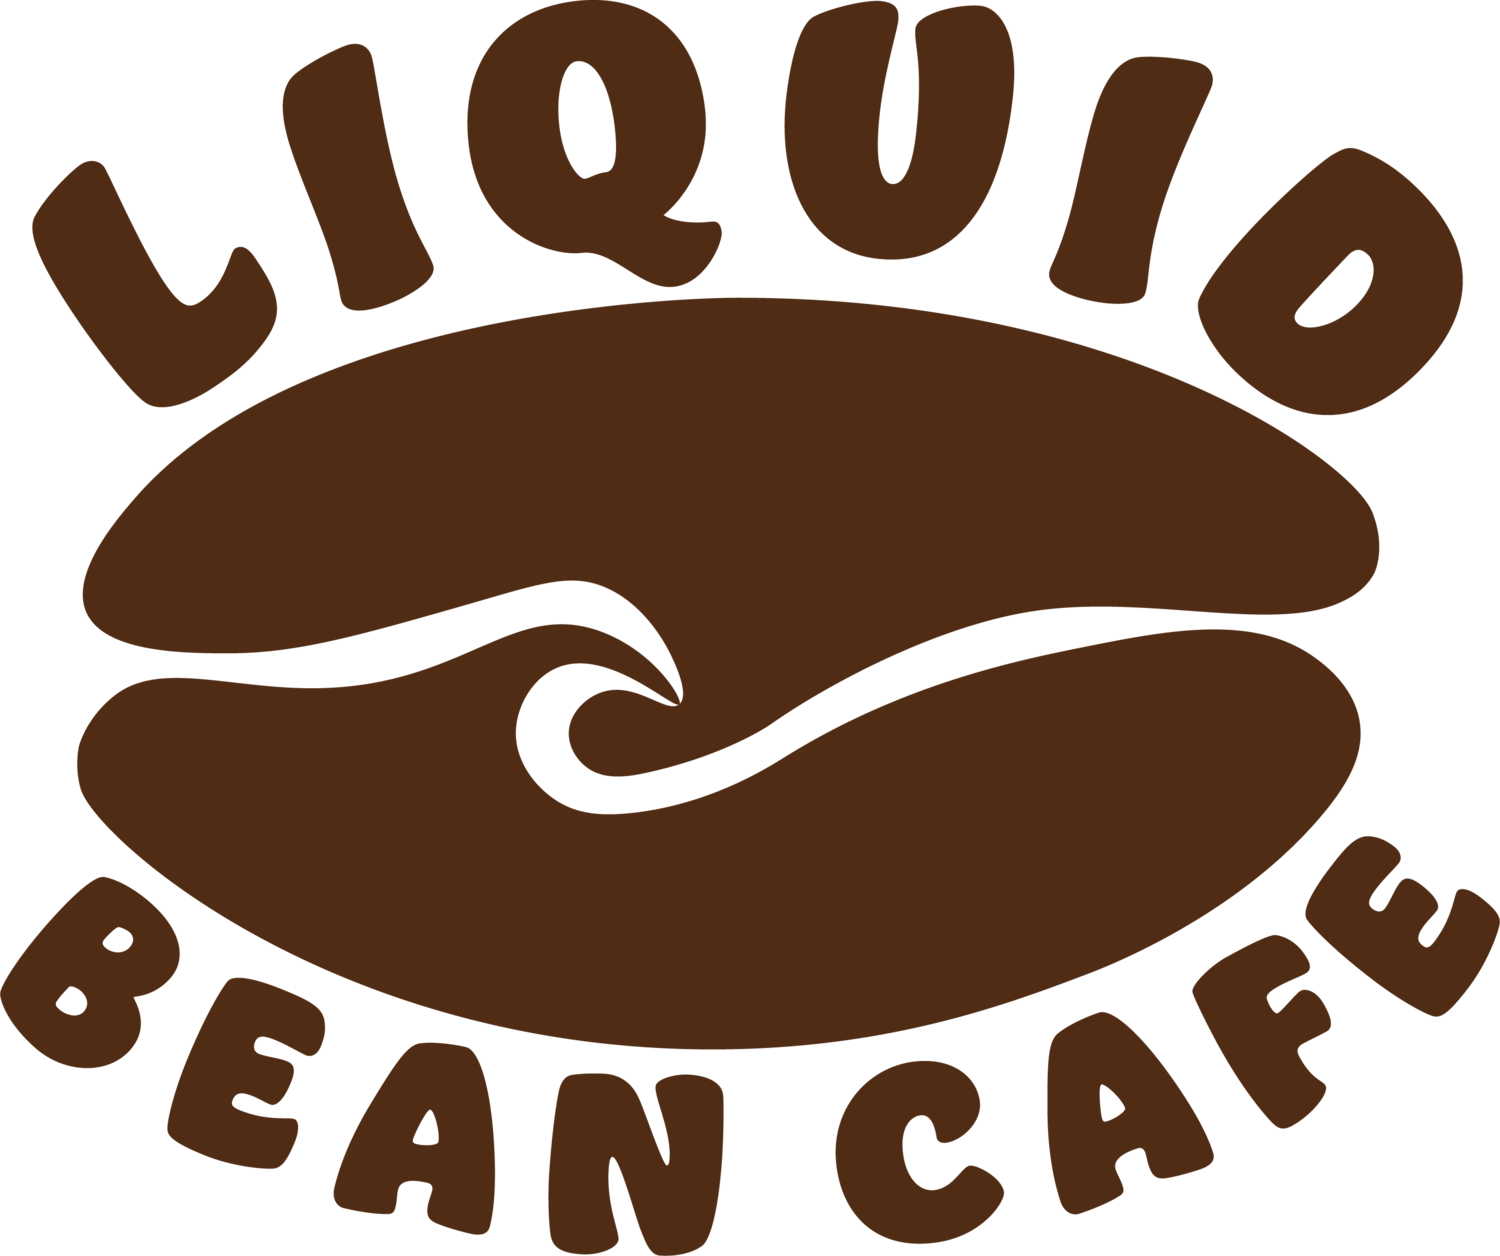 Liquid Bean Cafe - Del Mar, CA.